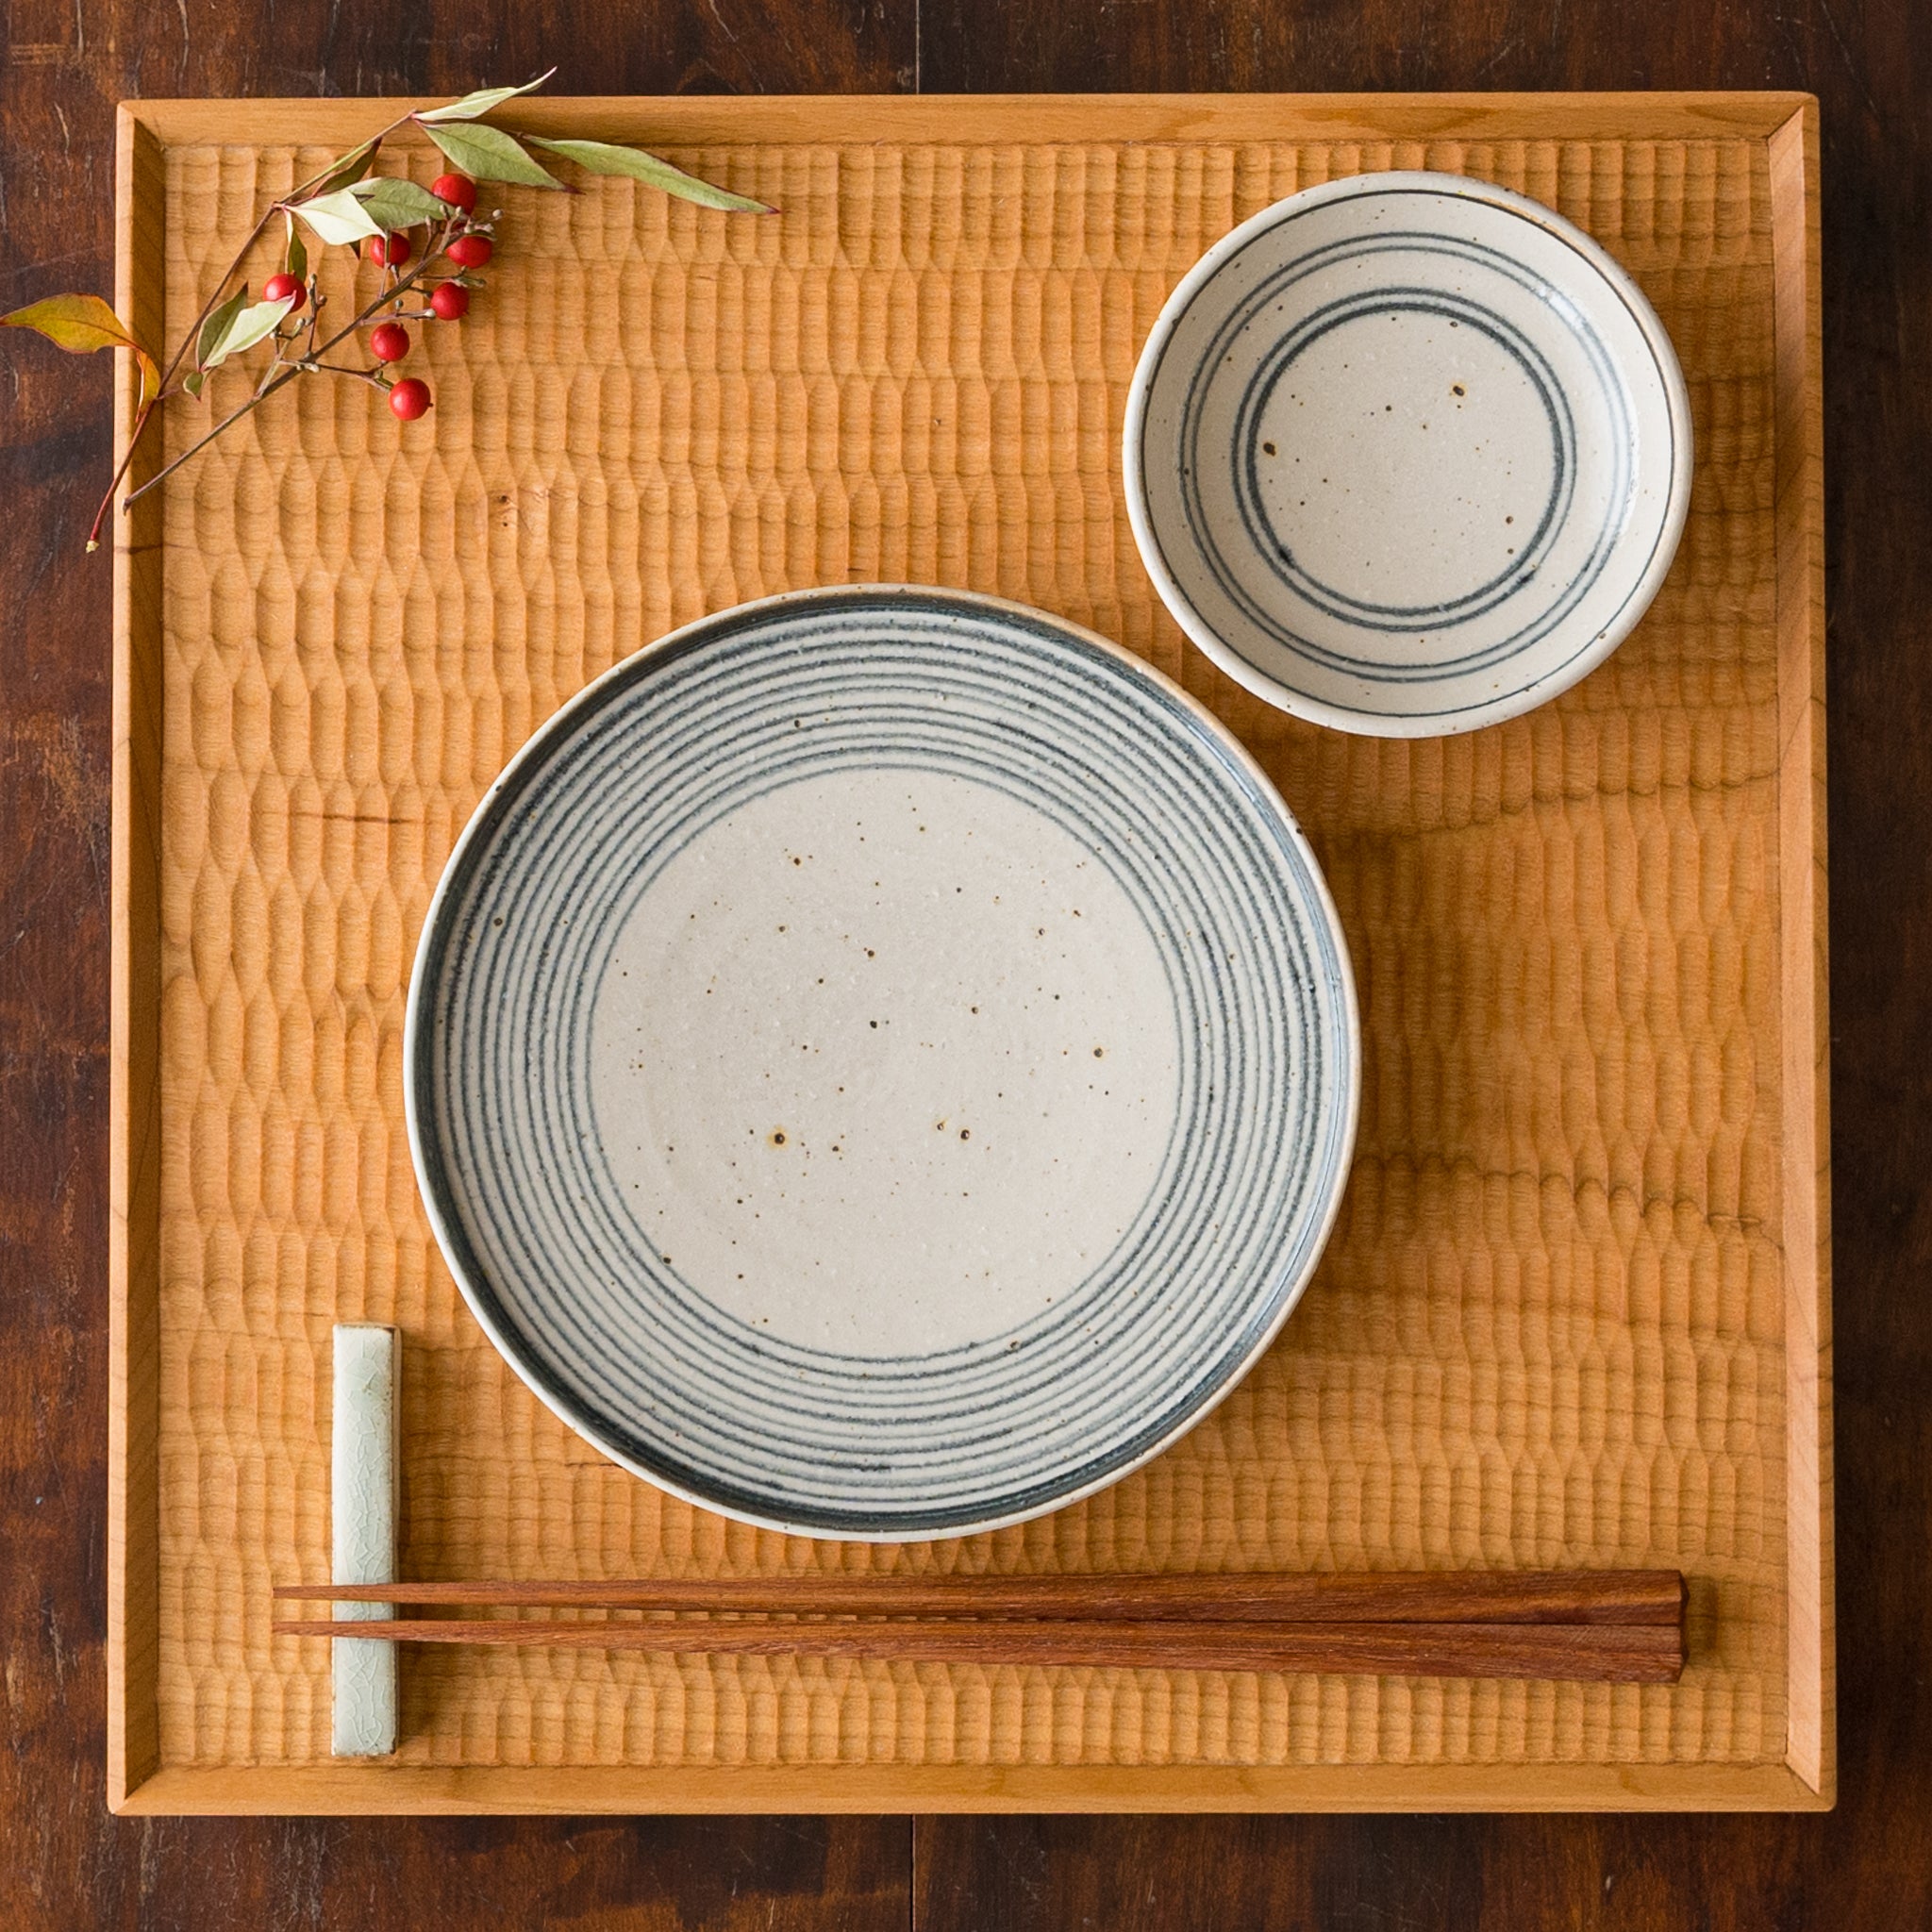 盛り付けたお料理が引き立つ冨本大輔さんの灰釉染付5寸平皿と3寸皿